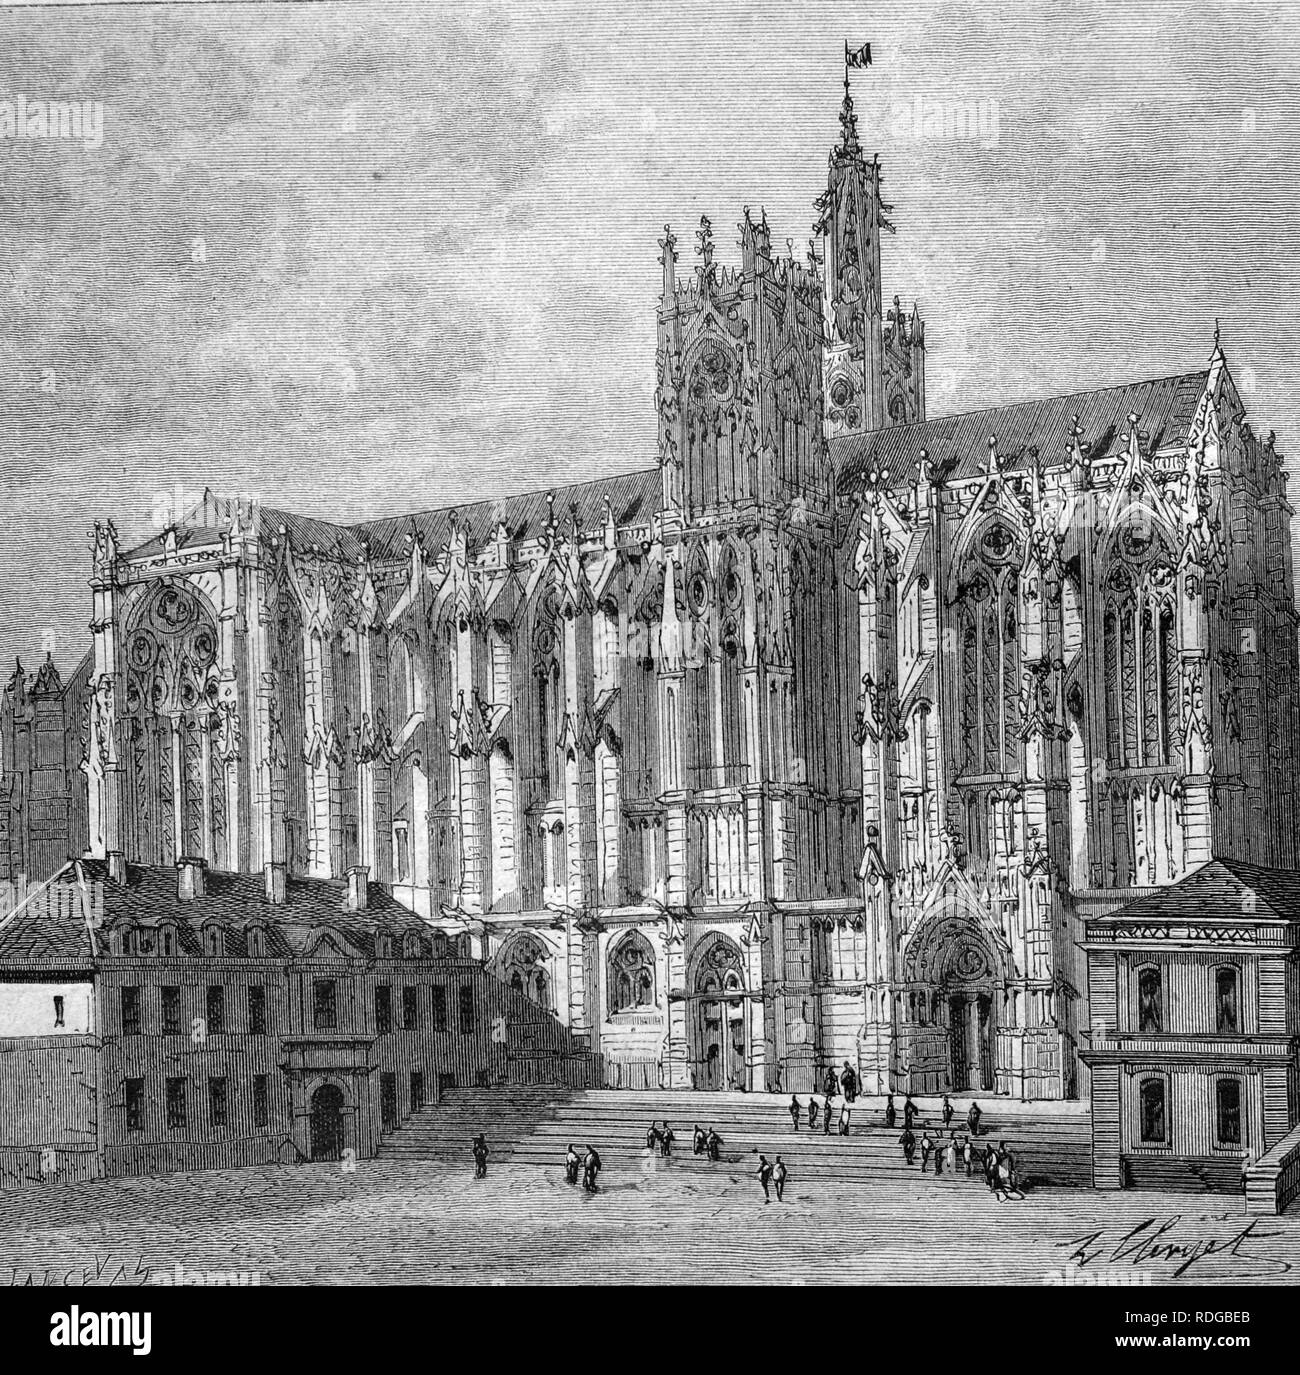 La Cathédrale de Metz, la cathédrale Saint-Étienne, France, illustration historique, 1877 Banque D'Images